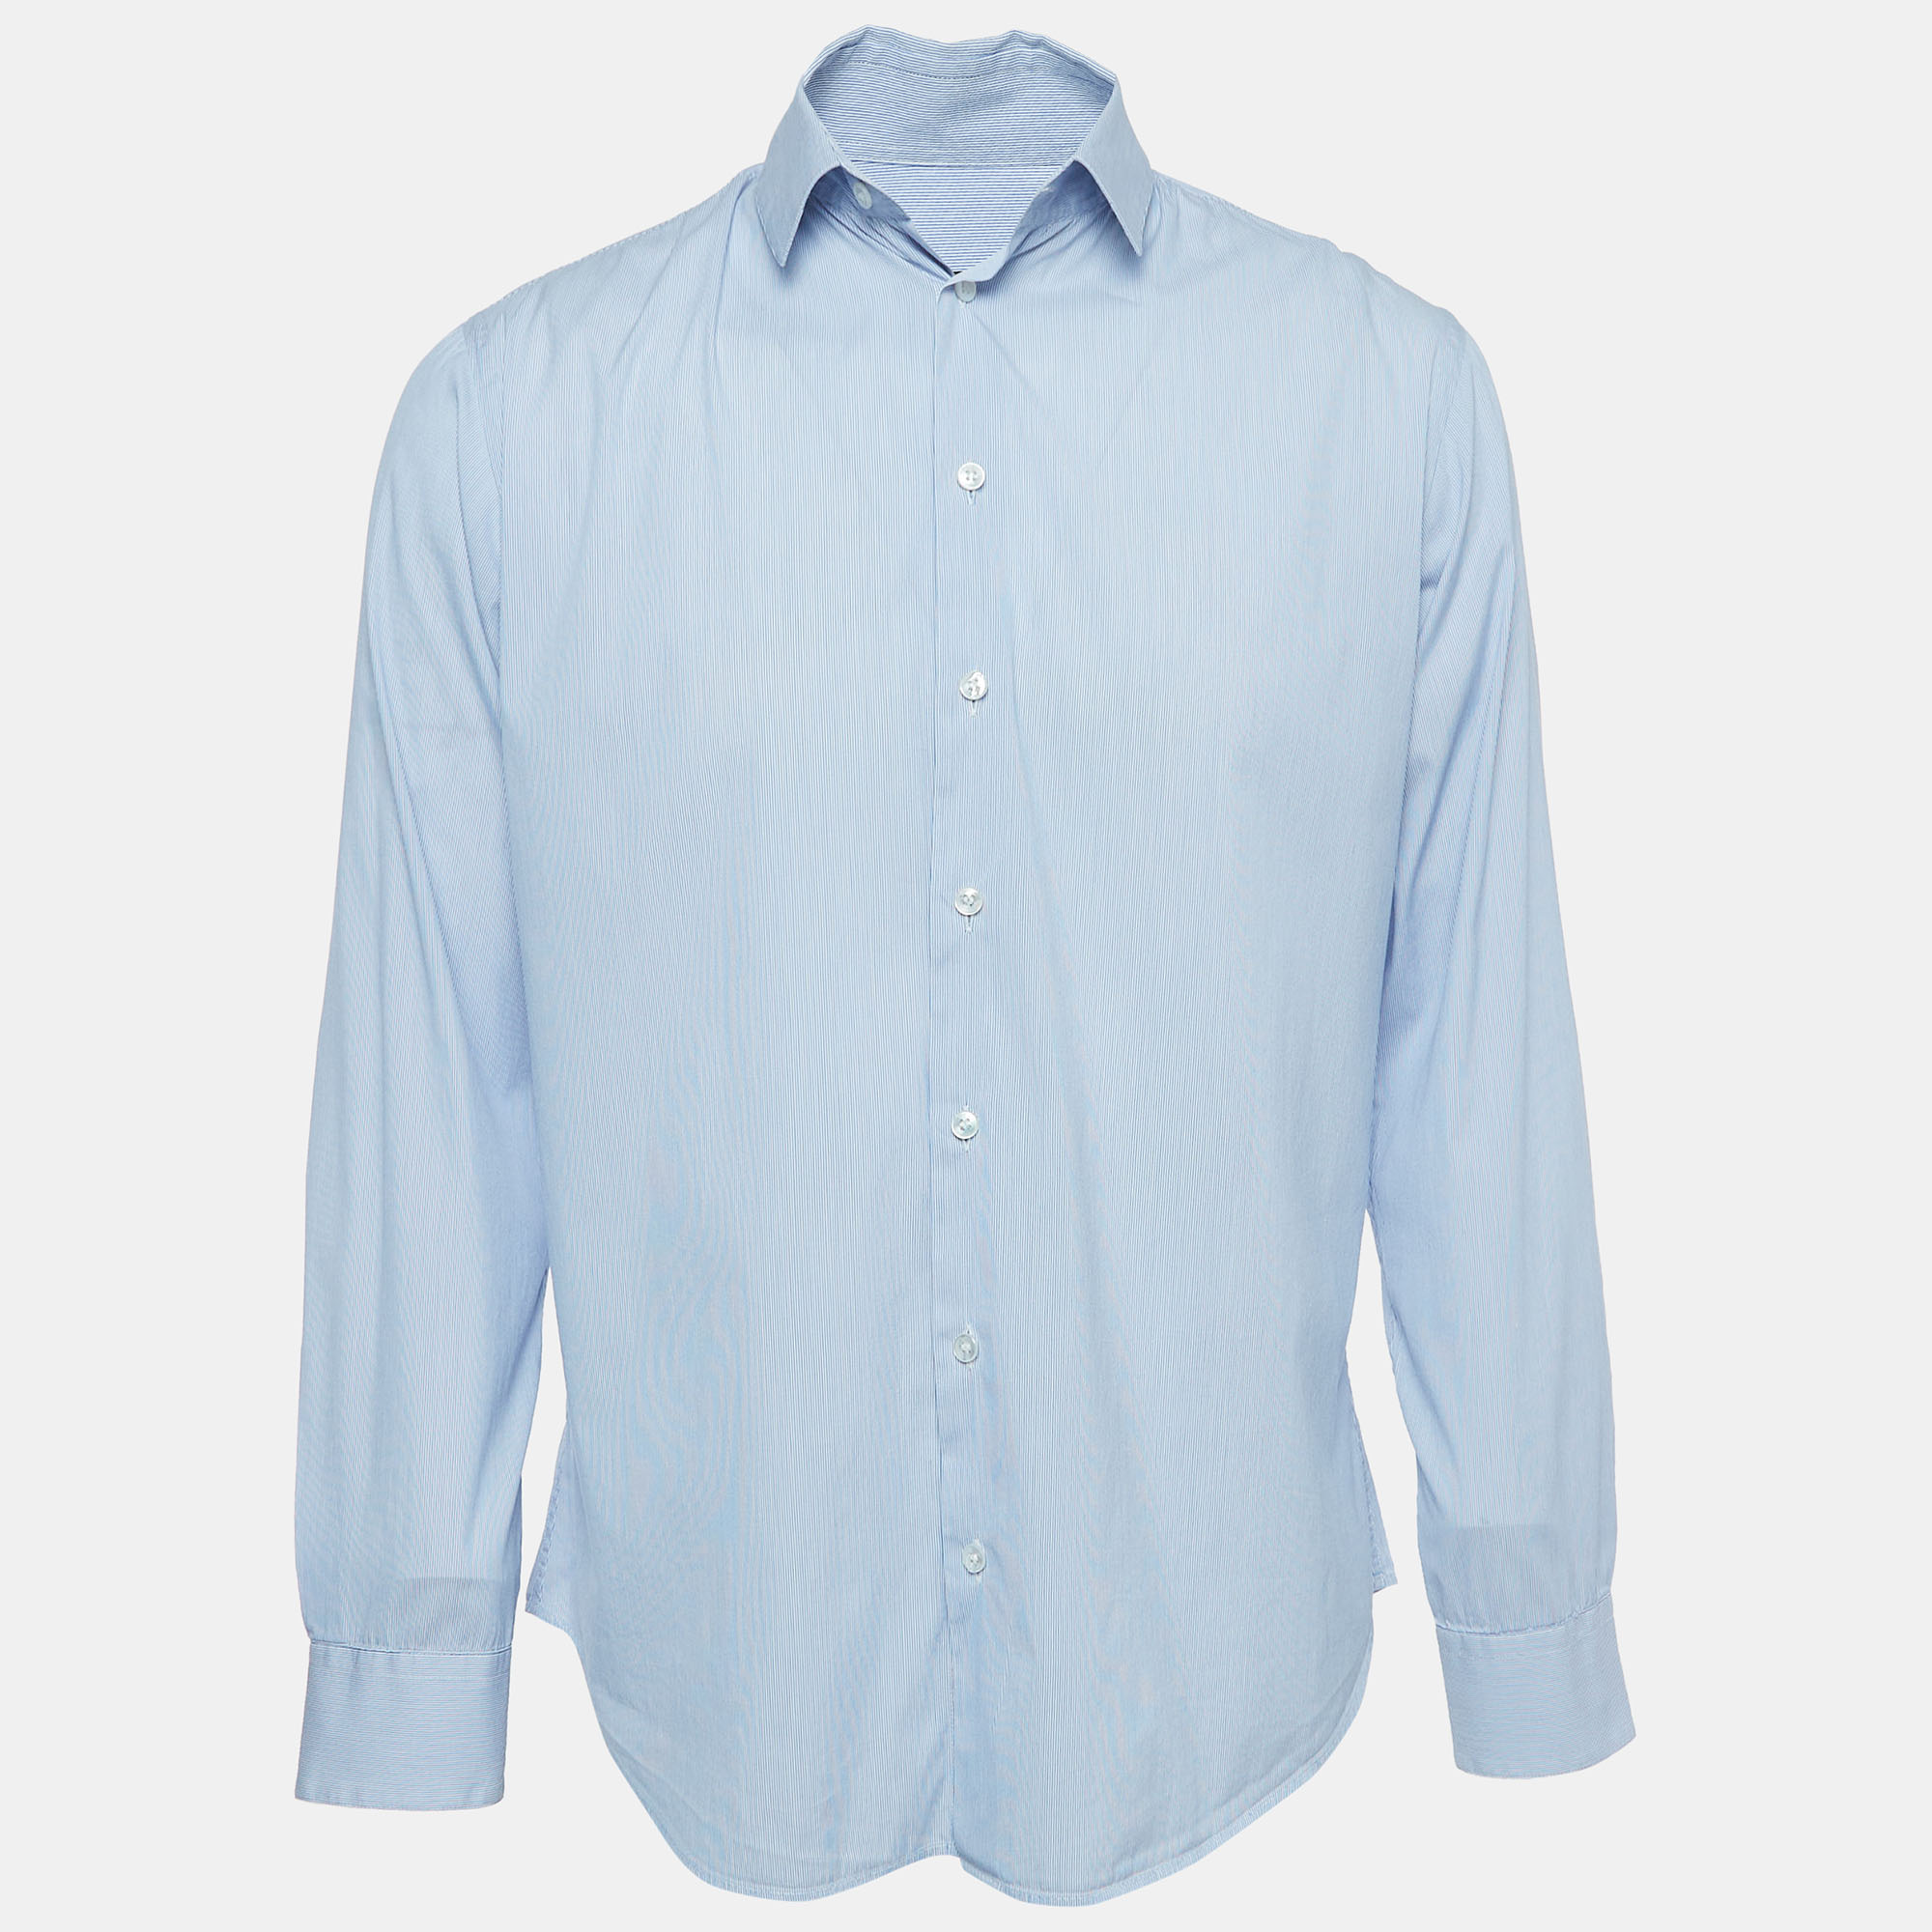 Giorgio Armani Blue Striped Cotton Button Front Shirt M